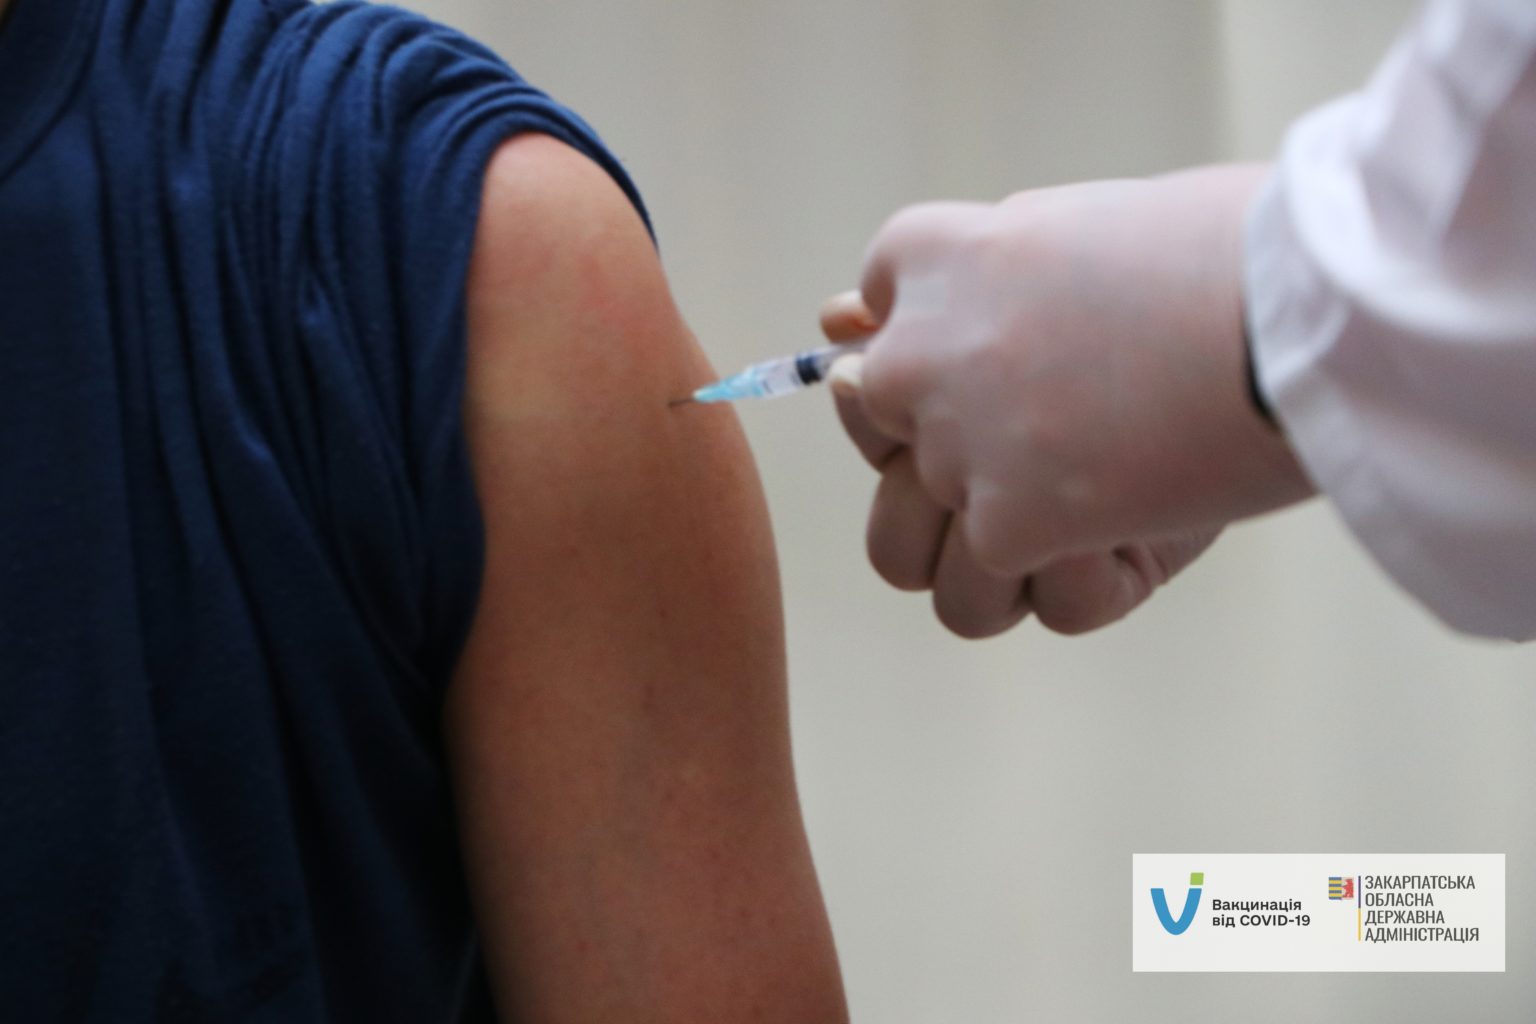 Закарпатські медики щоденно працюють в умовах пандемії, надаючи медичну допомогу та вакцинуючи краян проти COVID-19.